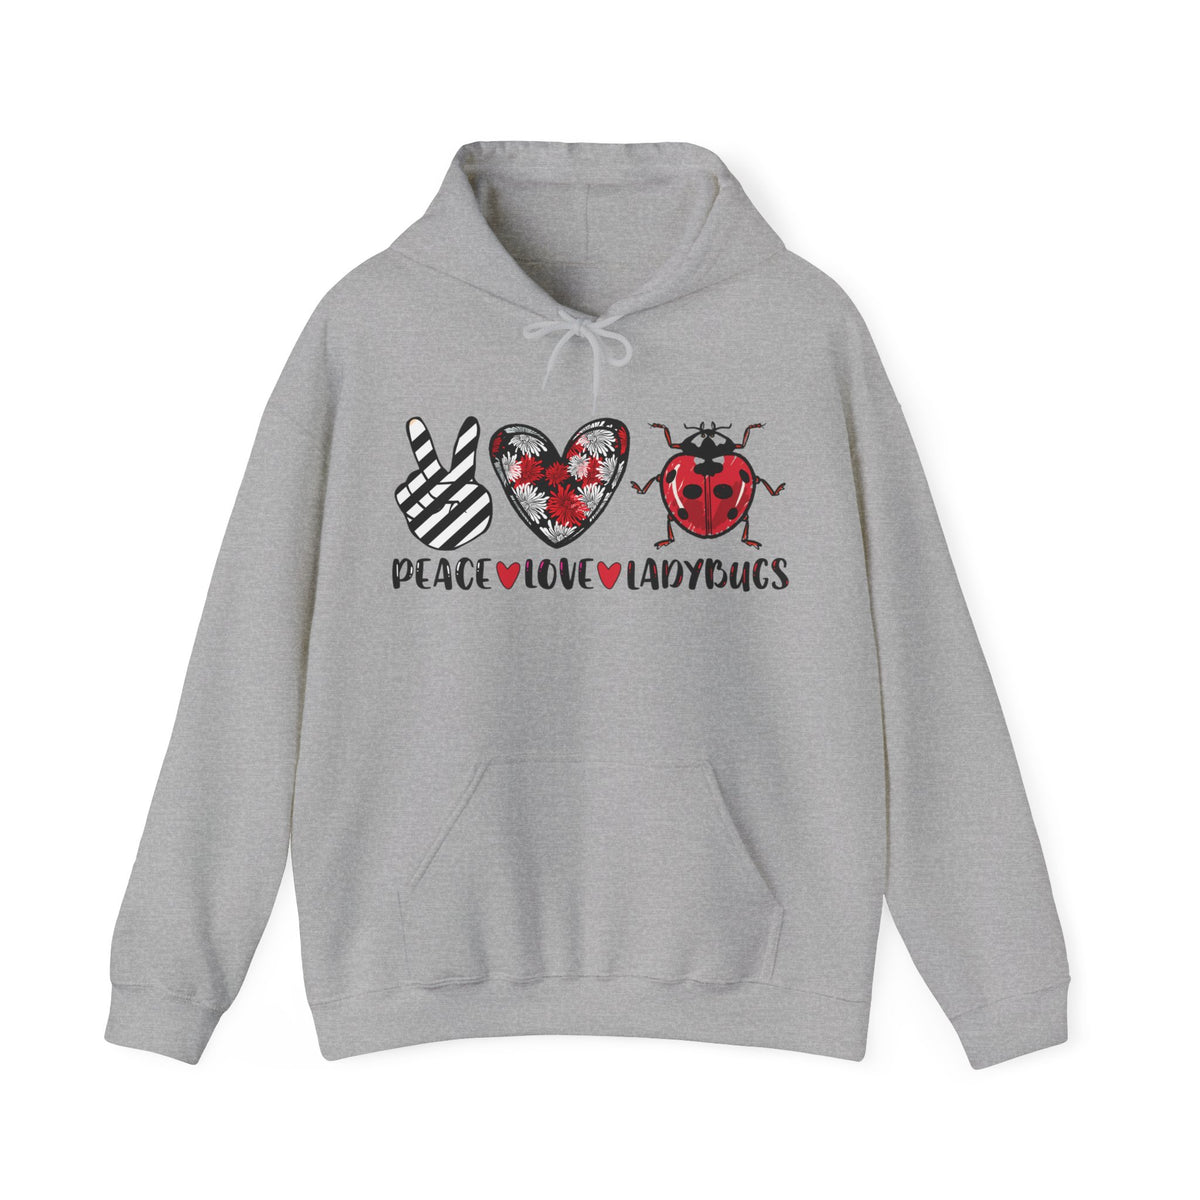 Peace Love Ladybug Gifts,  Insect Shirt, Lady Bug Nature Shirt, Unisex Hooded Sweatshirt